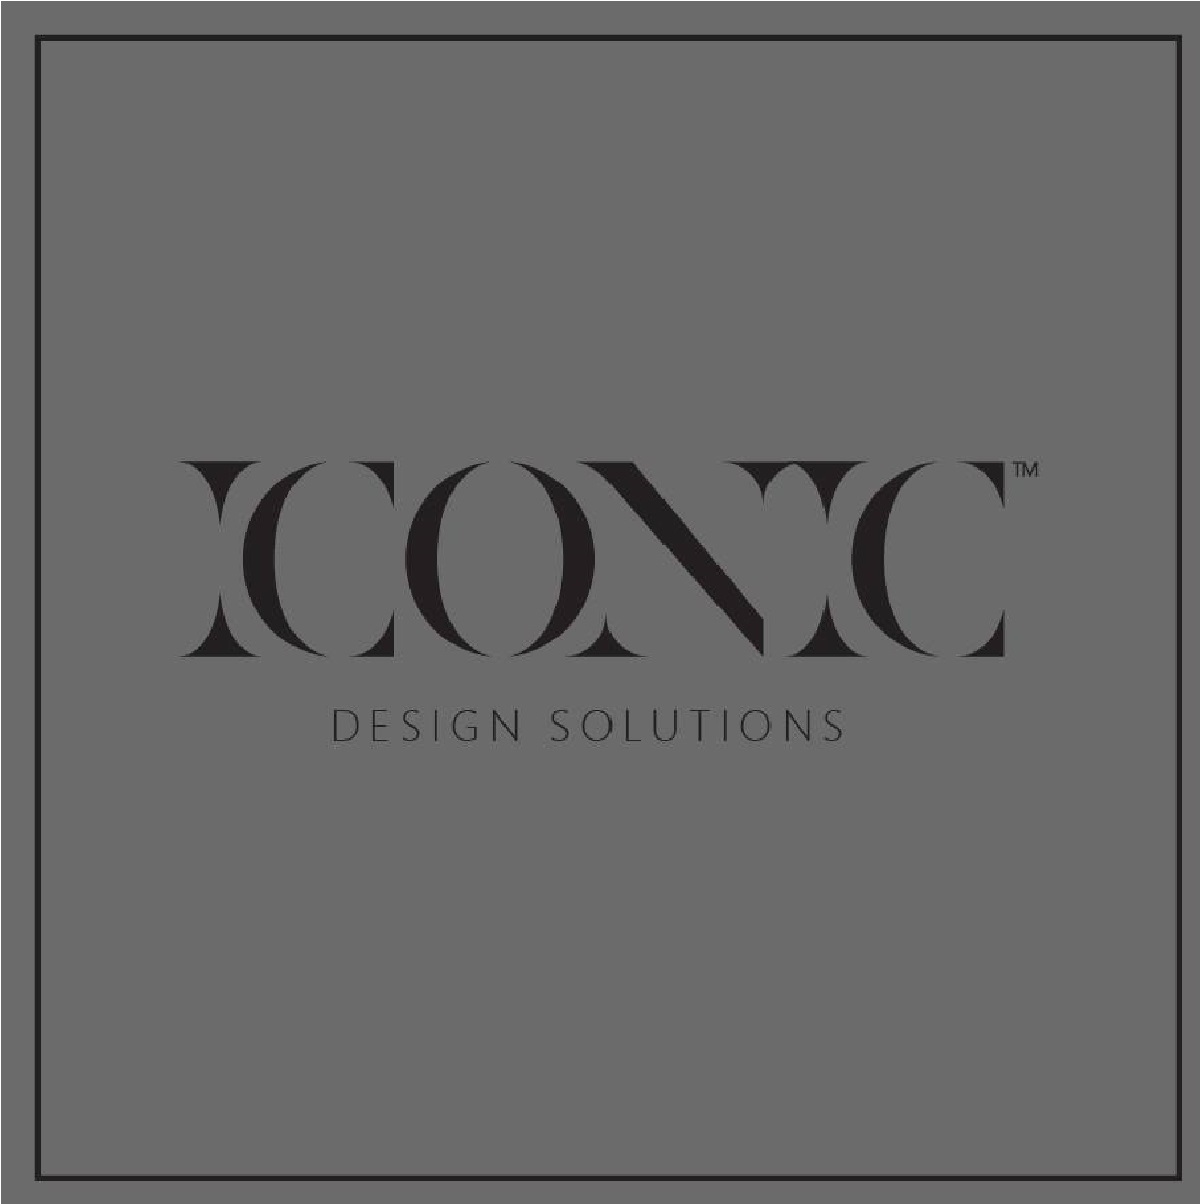 Iconic Design Studio